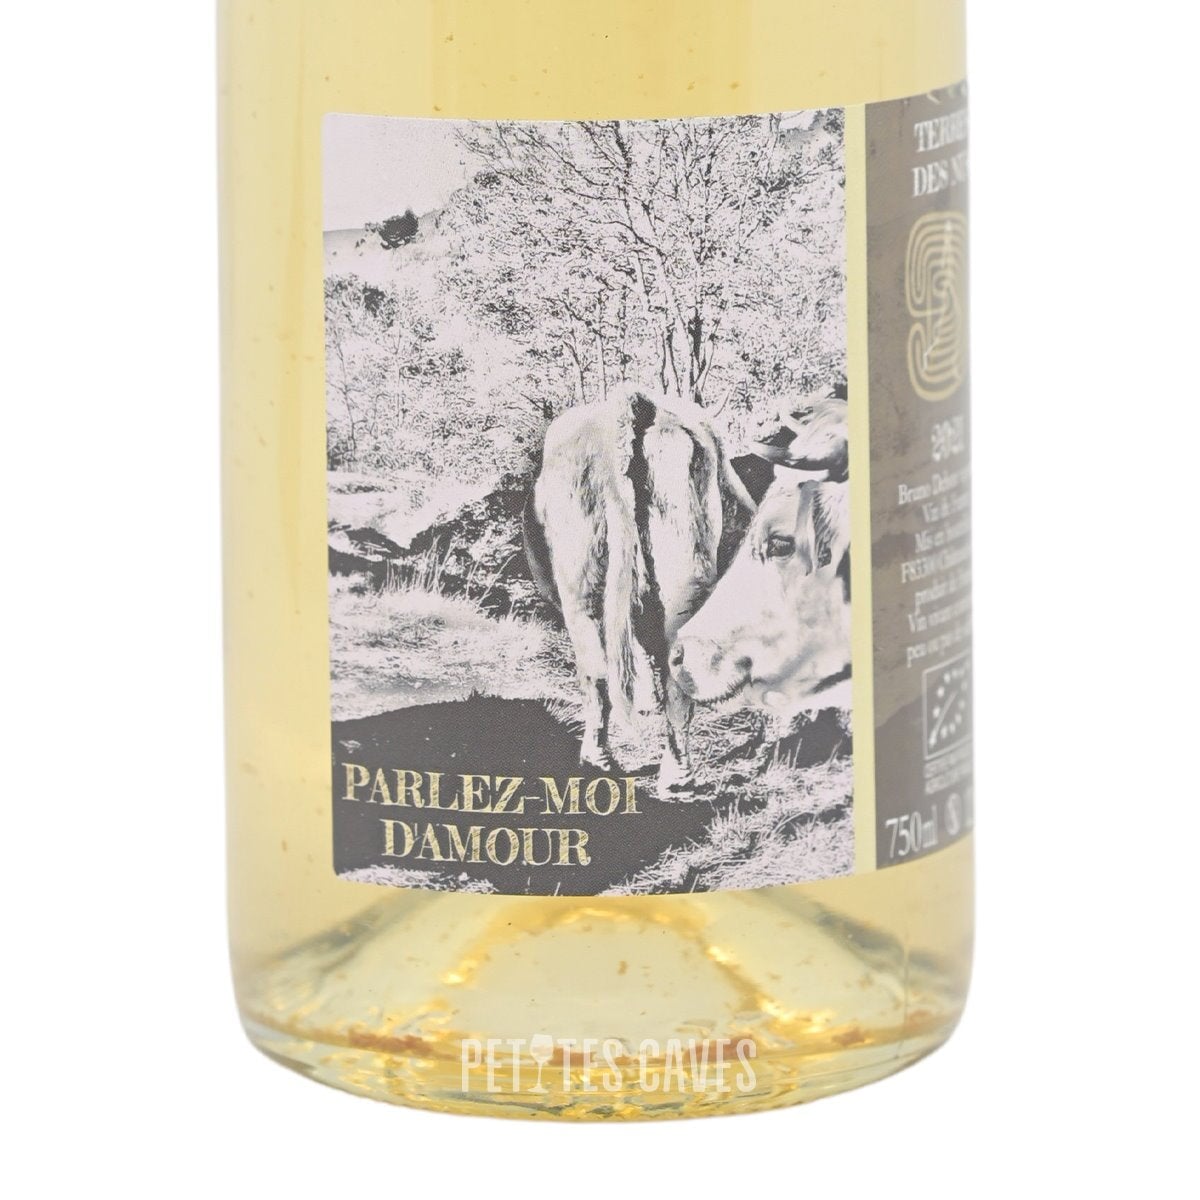 Parlez-moi d’amour vin blanc, vin bio - vin de France -  Terres des Nus (Bruno Debon) sur Petites Caves